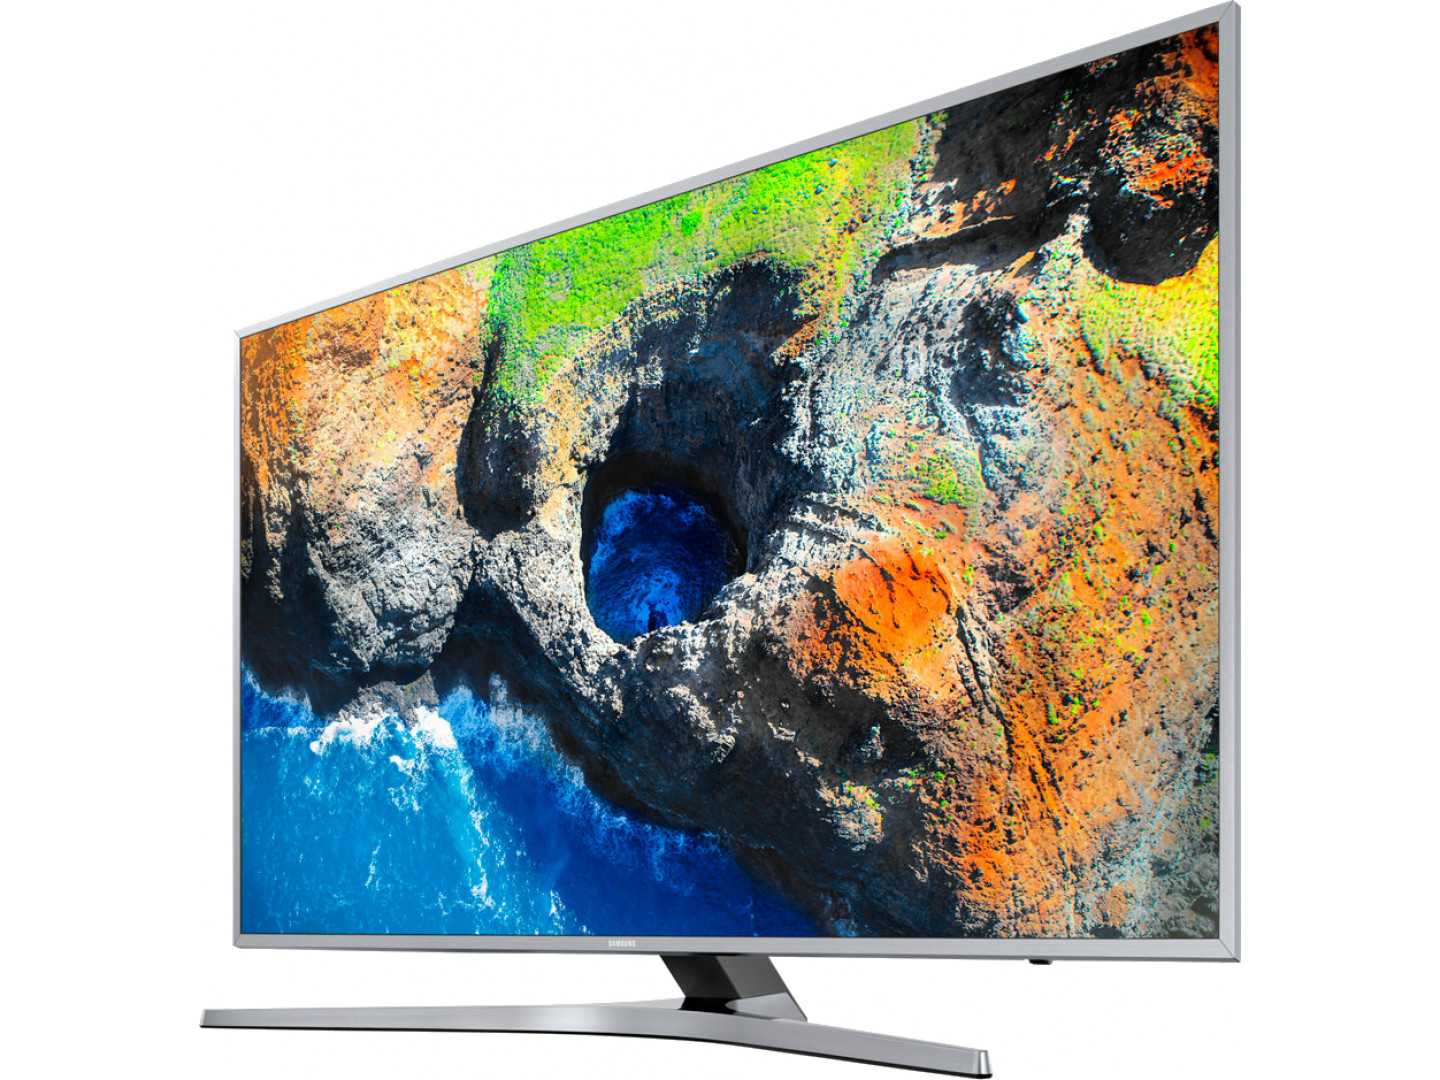 Samsung ue65f6400акx (черный) - купить , скидки, цена, отзывы, обзор, характеристики - телевизоры